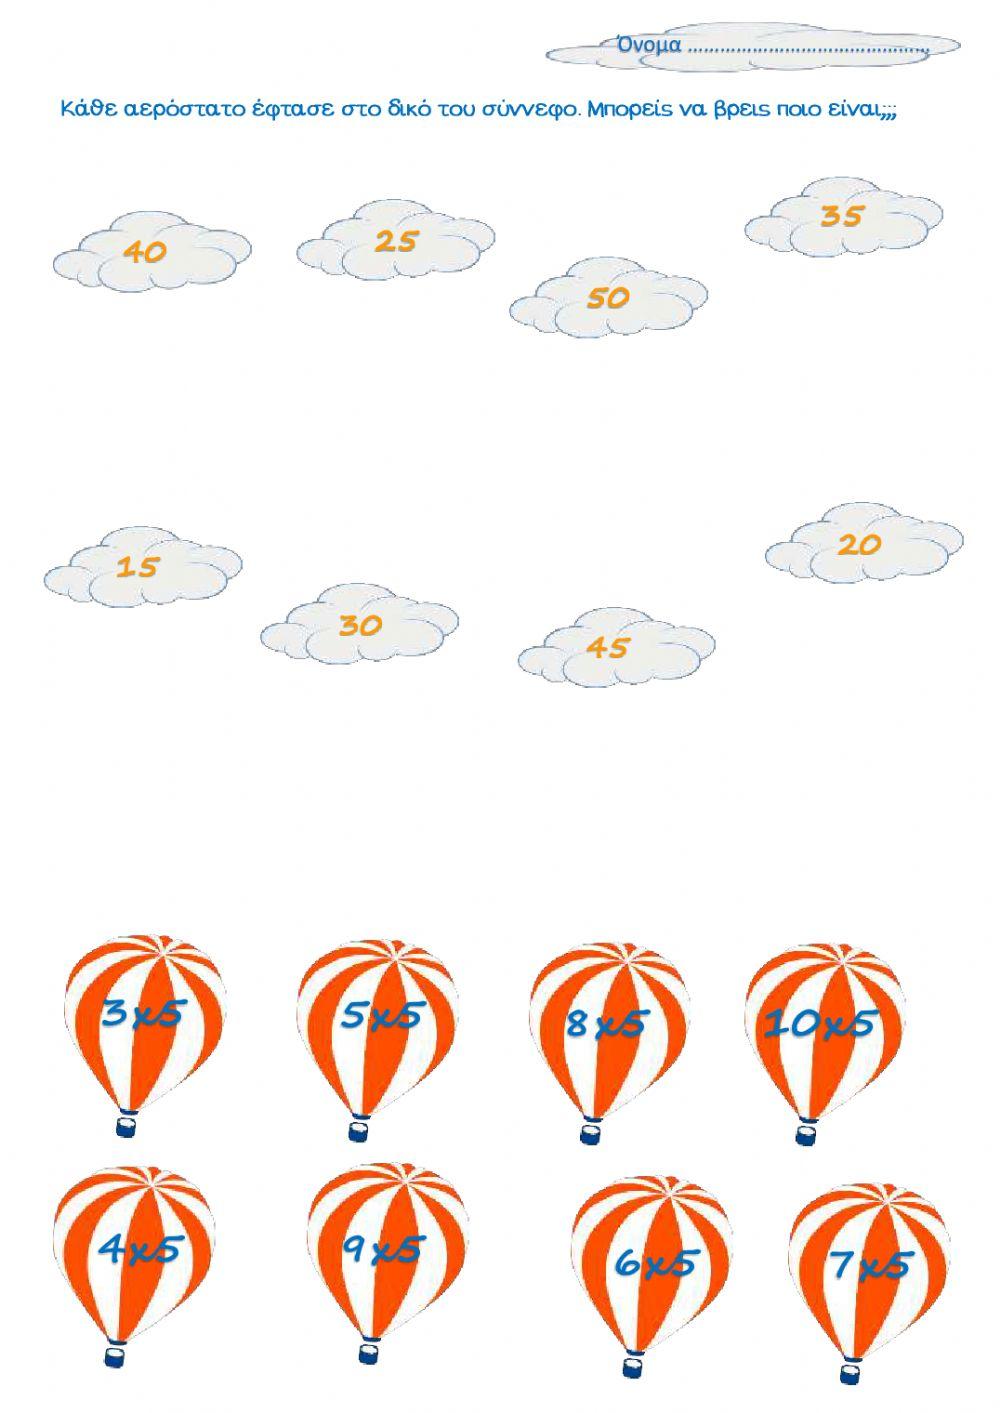 Προπαίδεια του 5 (αερόστατα)